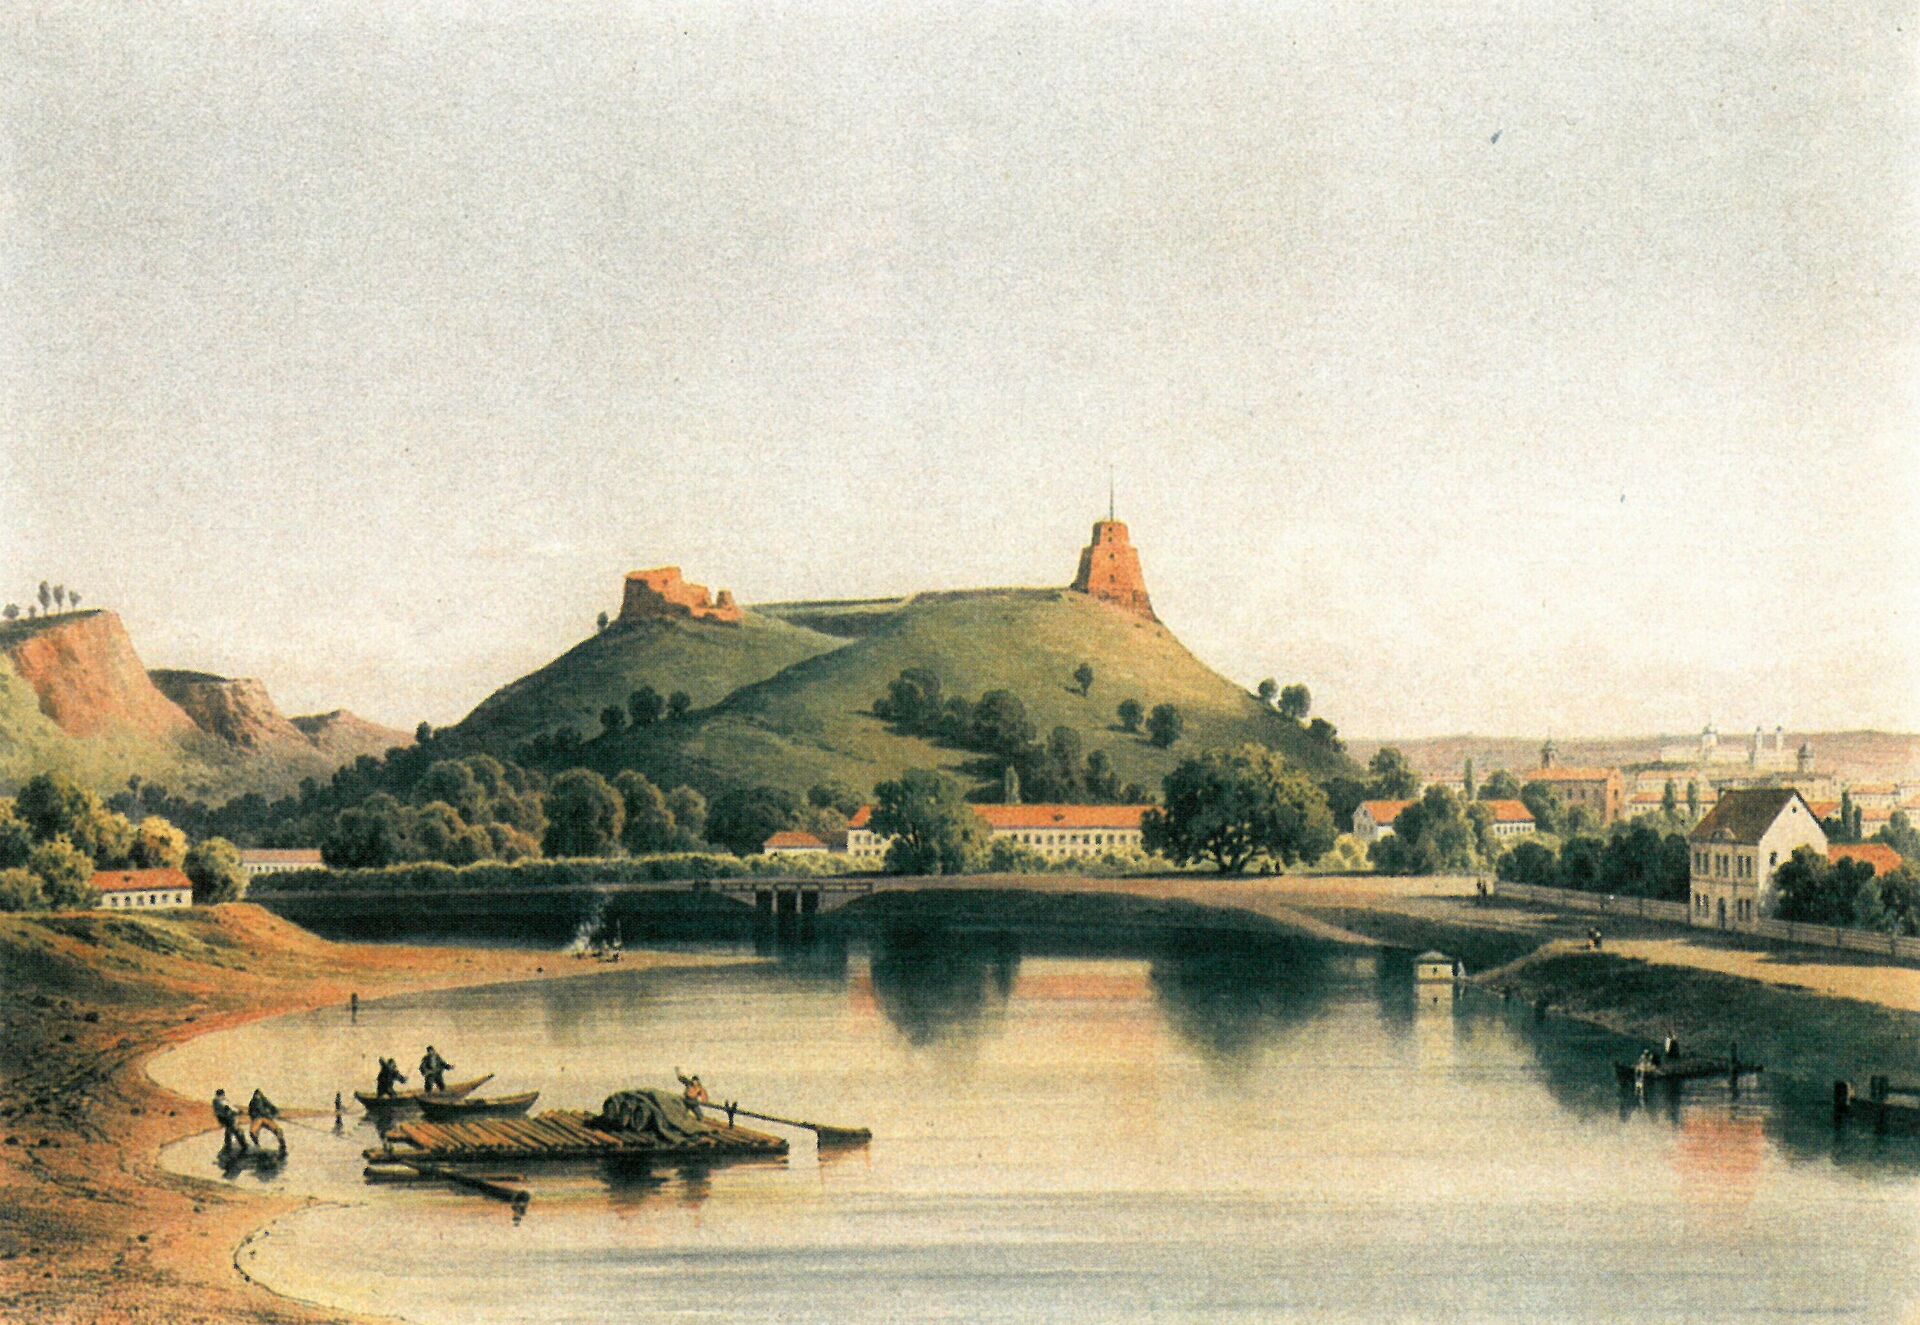 Вид на Замковую гору в Вильнюсе на картине 1870 года - Sputnik Lietuva, 1920, 12.11.2021